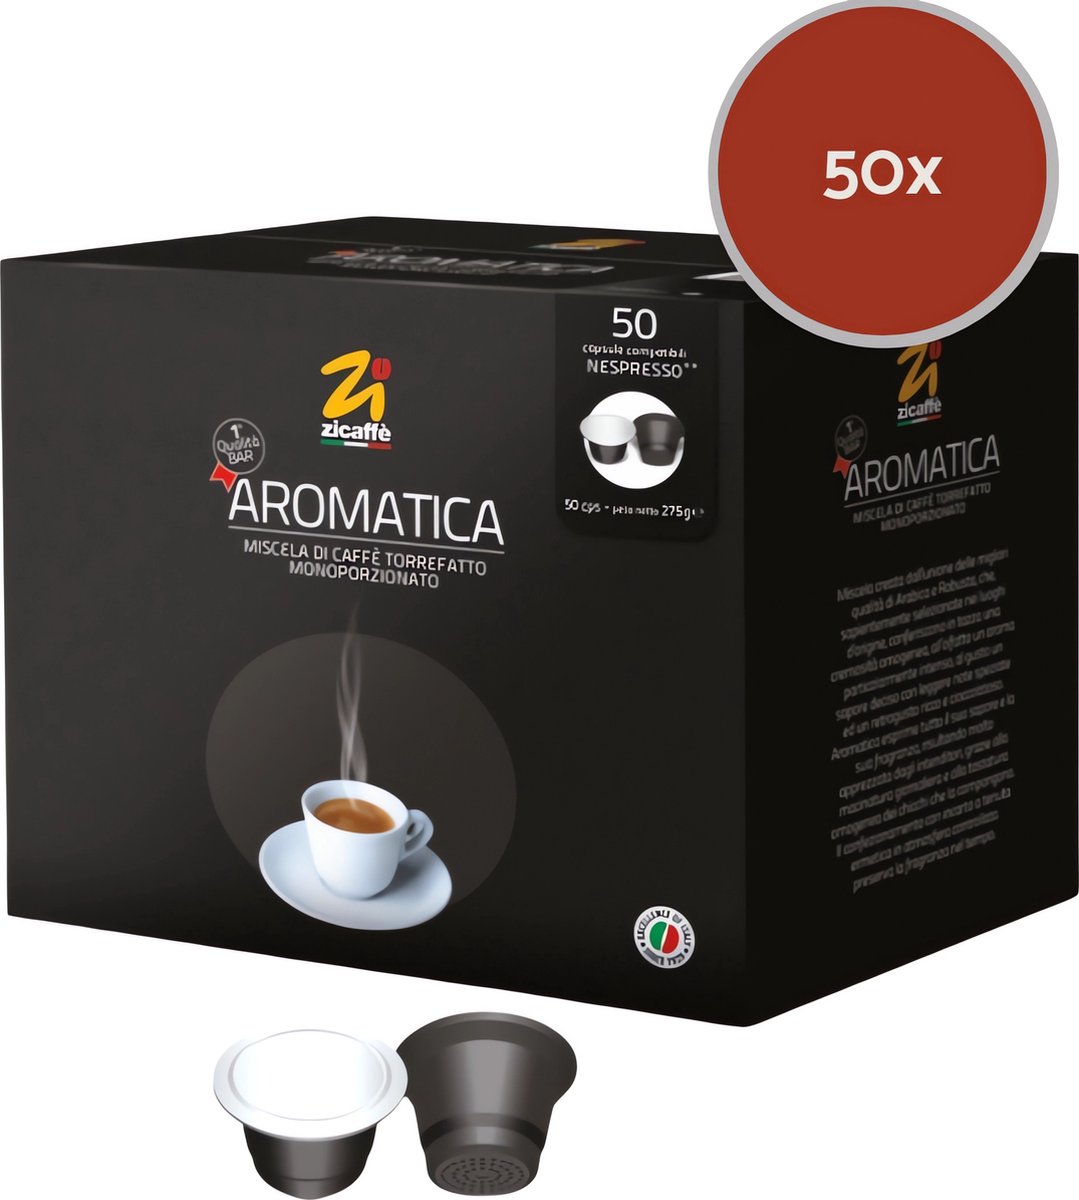 Zicaffè Aromatica - Nespresso Koffiecups - 50 koffie capsules (Siciliaanse koffie) - voor espresso, cappuccino, ristretto, macchiato - Werkt met Nespresso Inissia, Citiz, Essenza, Pixie koffiezetapparaten enz.